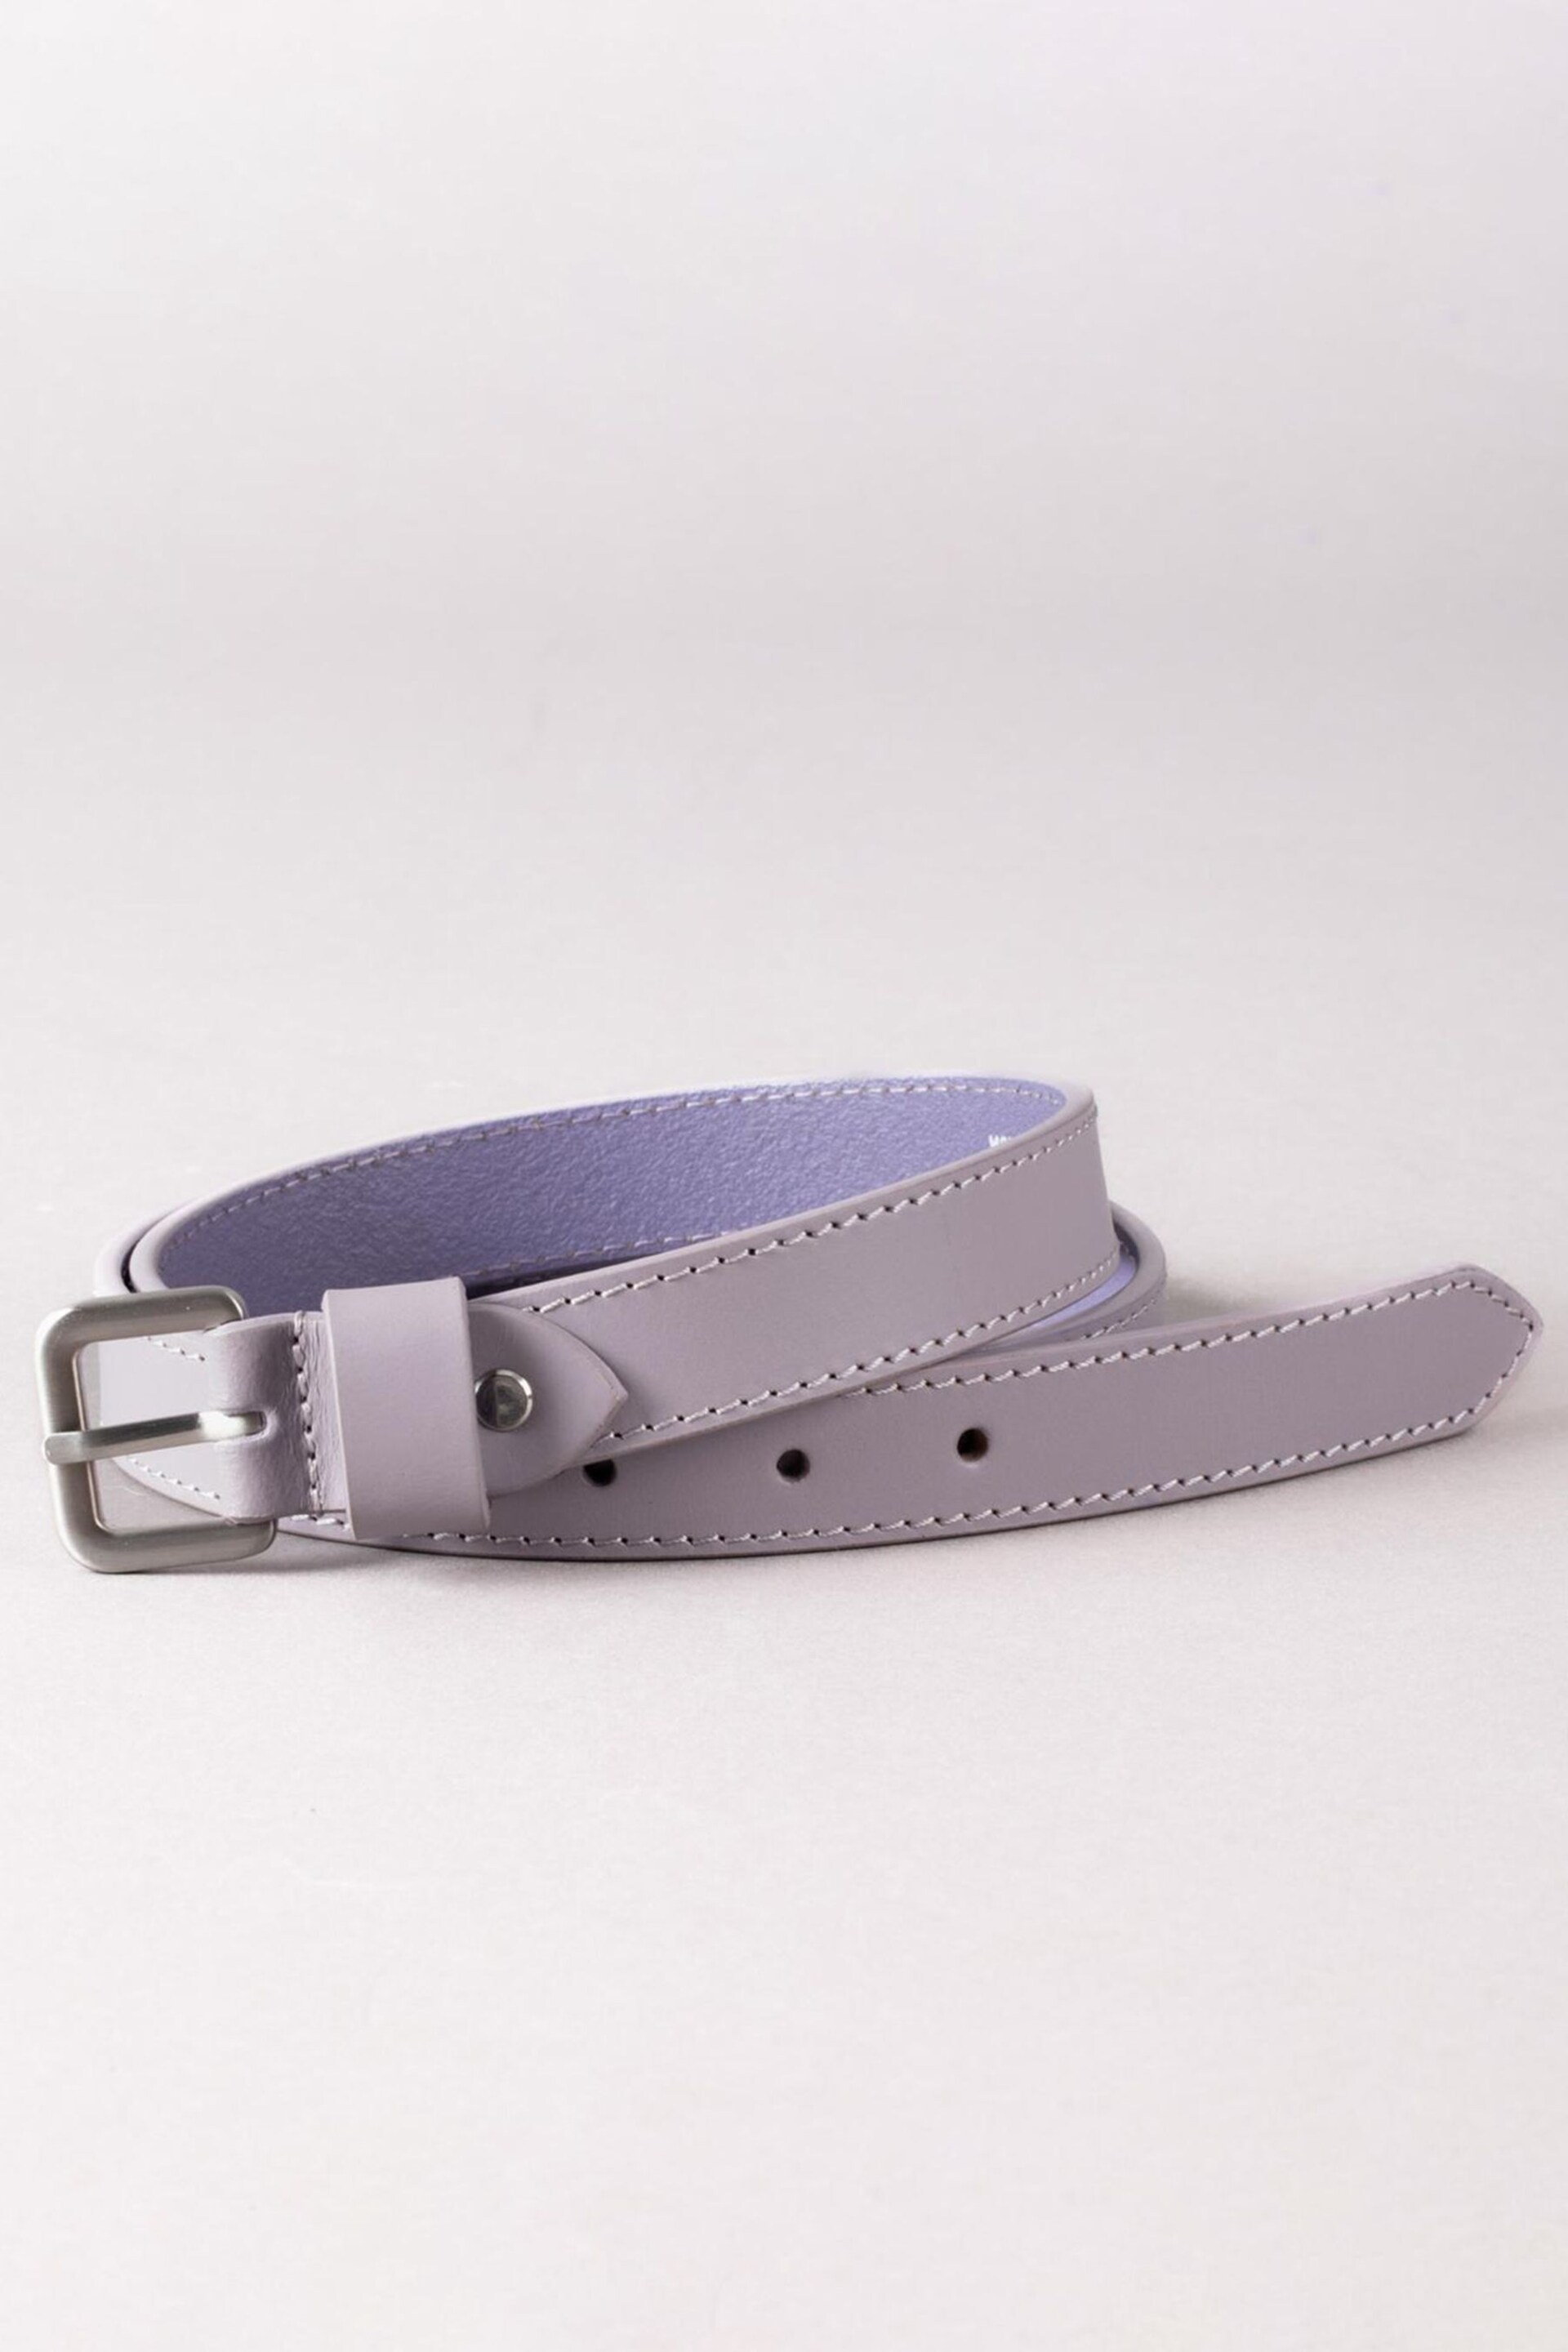 Lakeland Leather Purple Keswick Leather Belt - Image 1 of 3